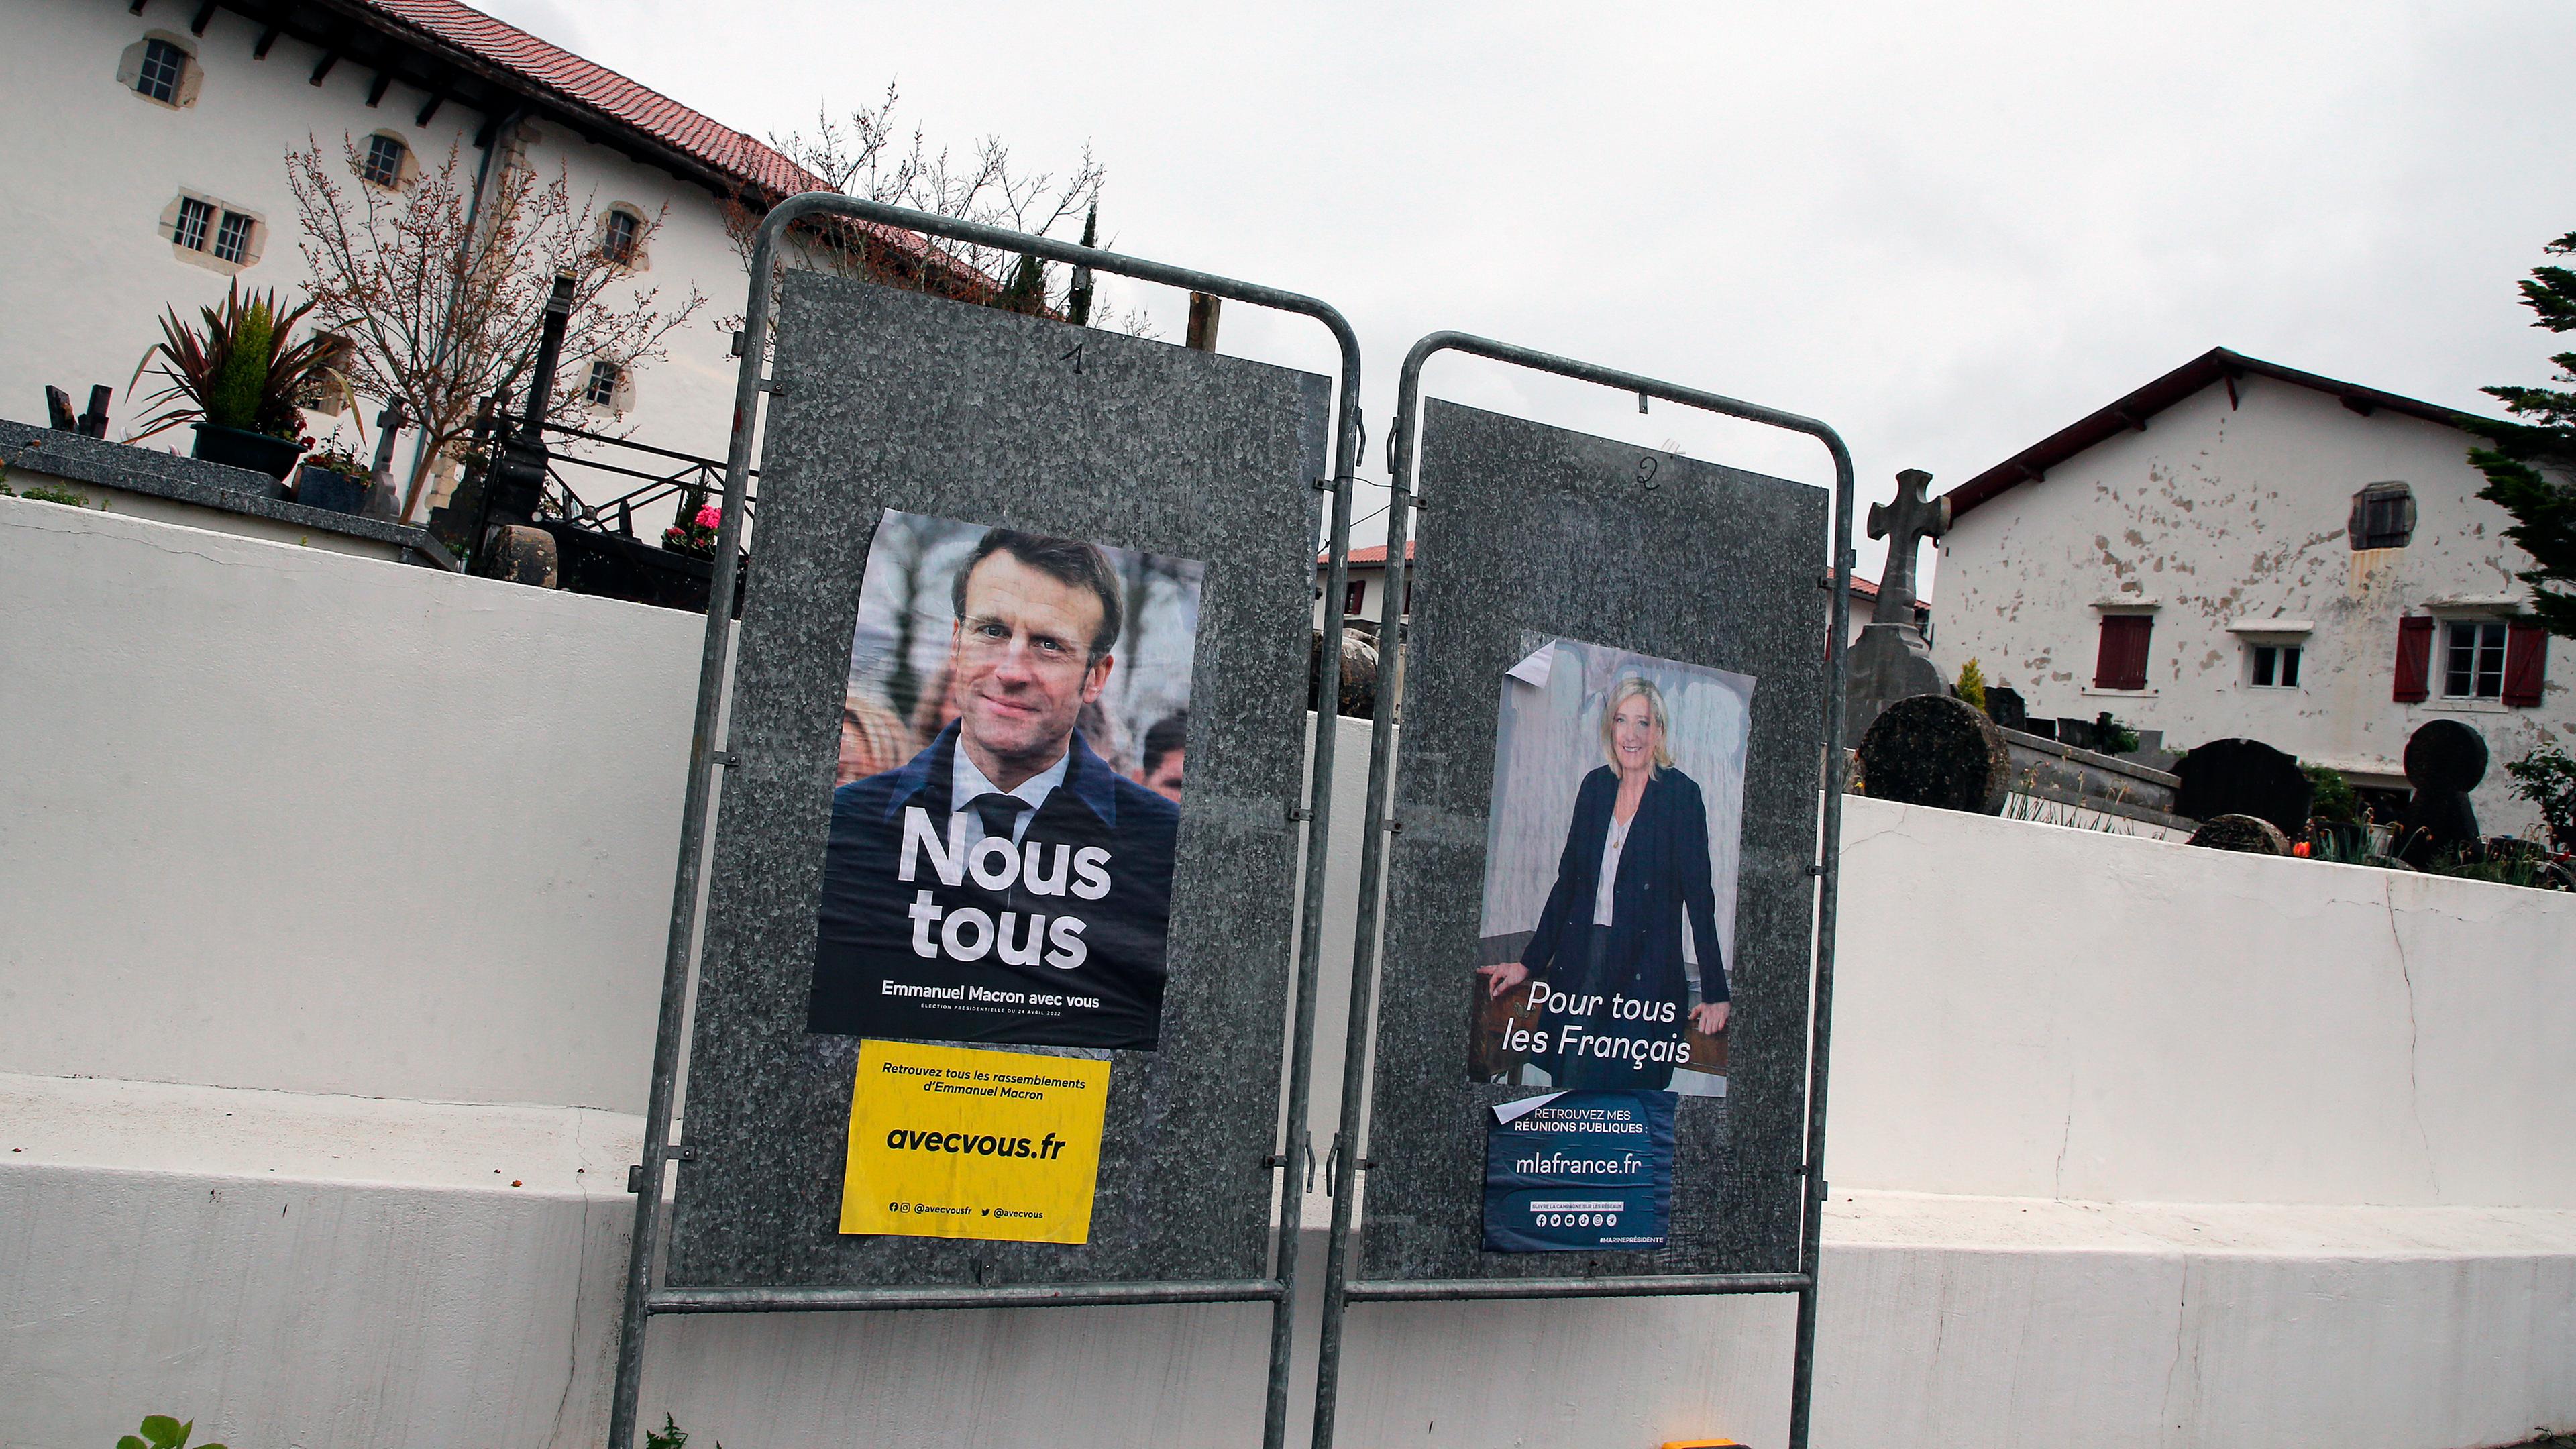 Wahlplakate von Marine Le Pen und Emmanuel Macron angeschlagen vor einer Mauer